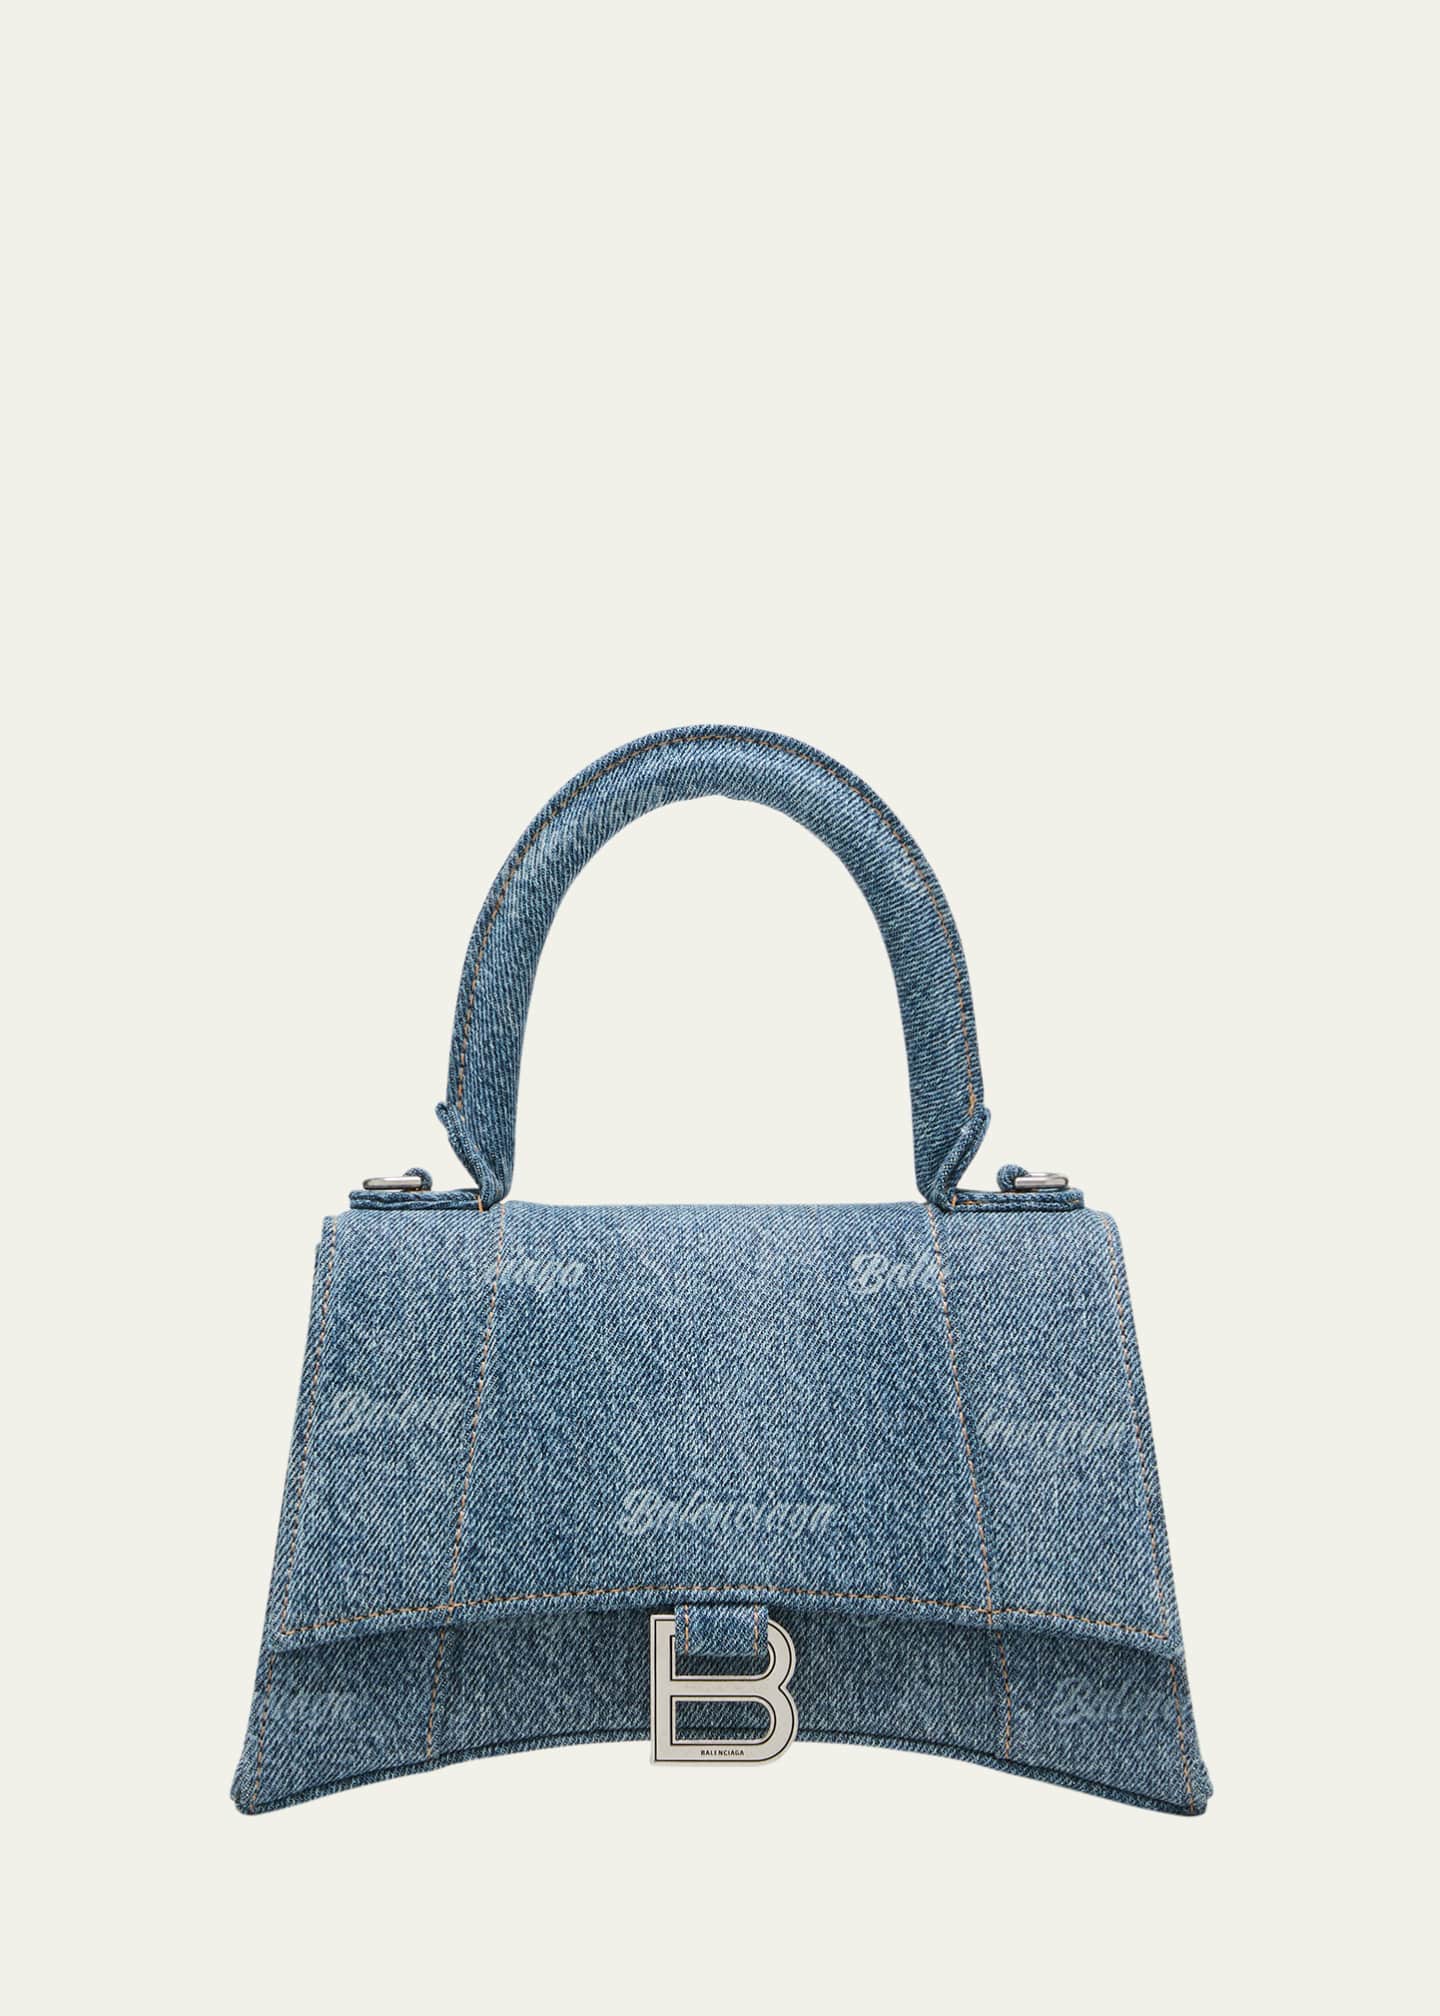 Balenciaga Hourglass Small Leather Top-Handle Bag